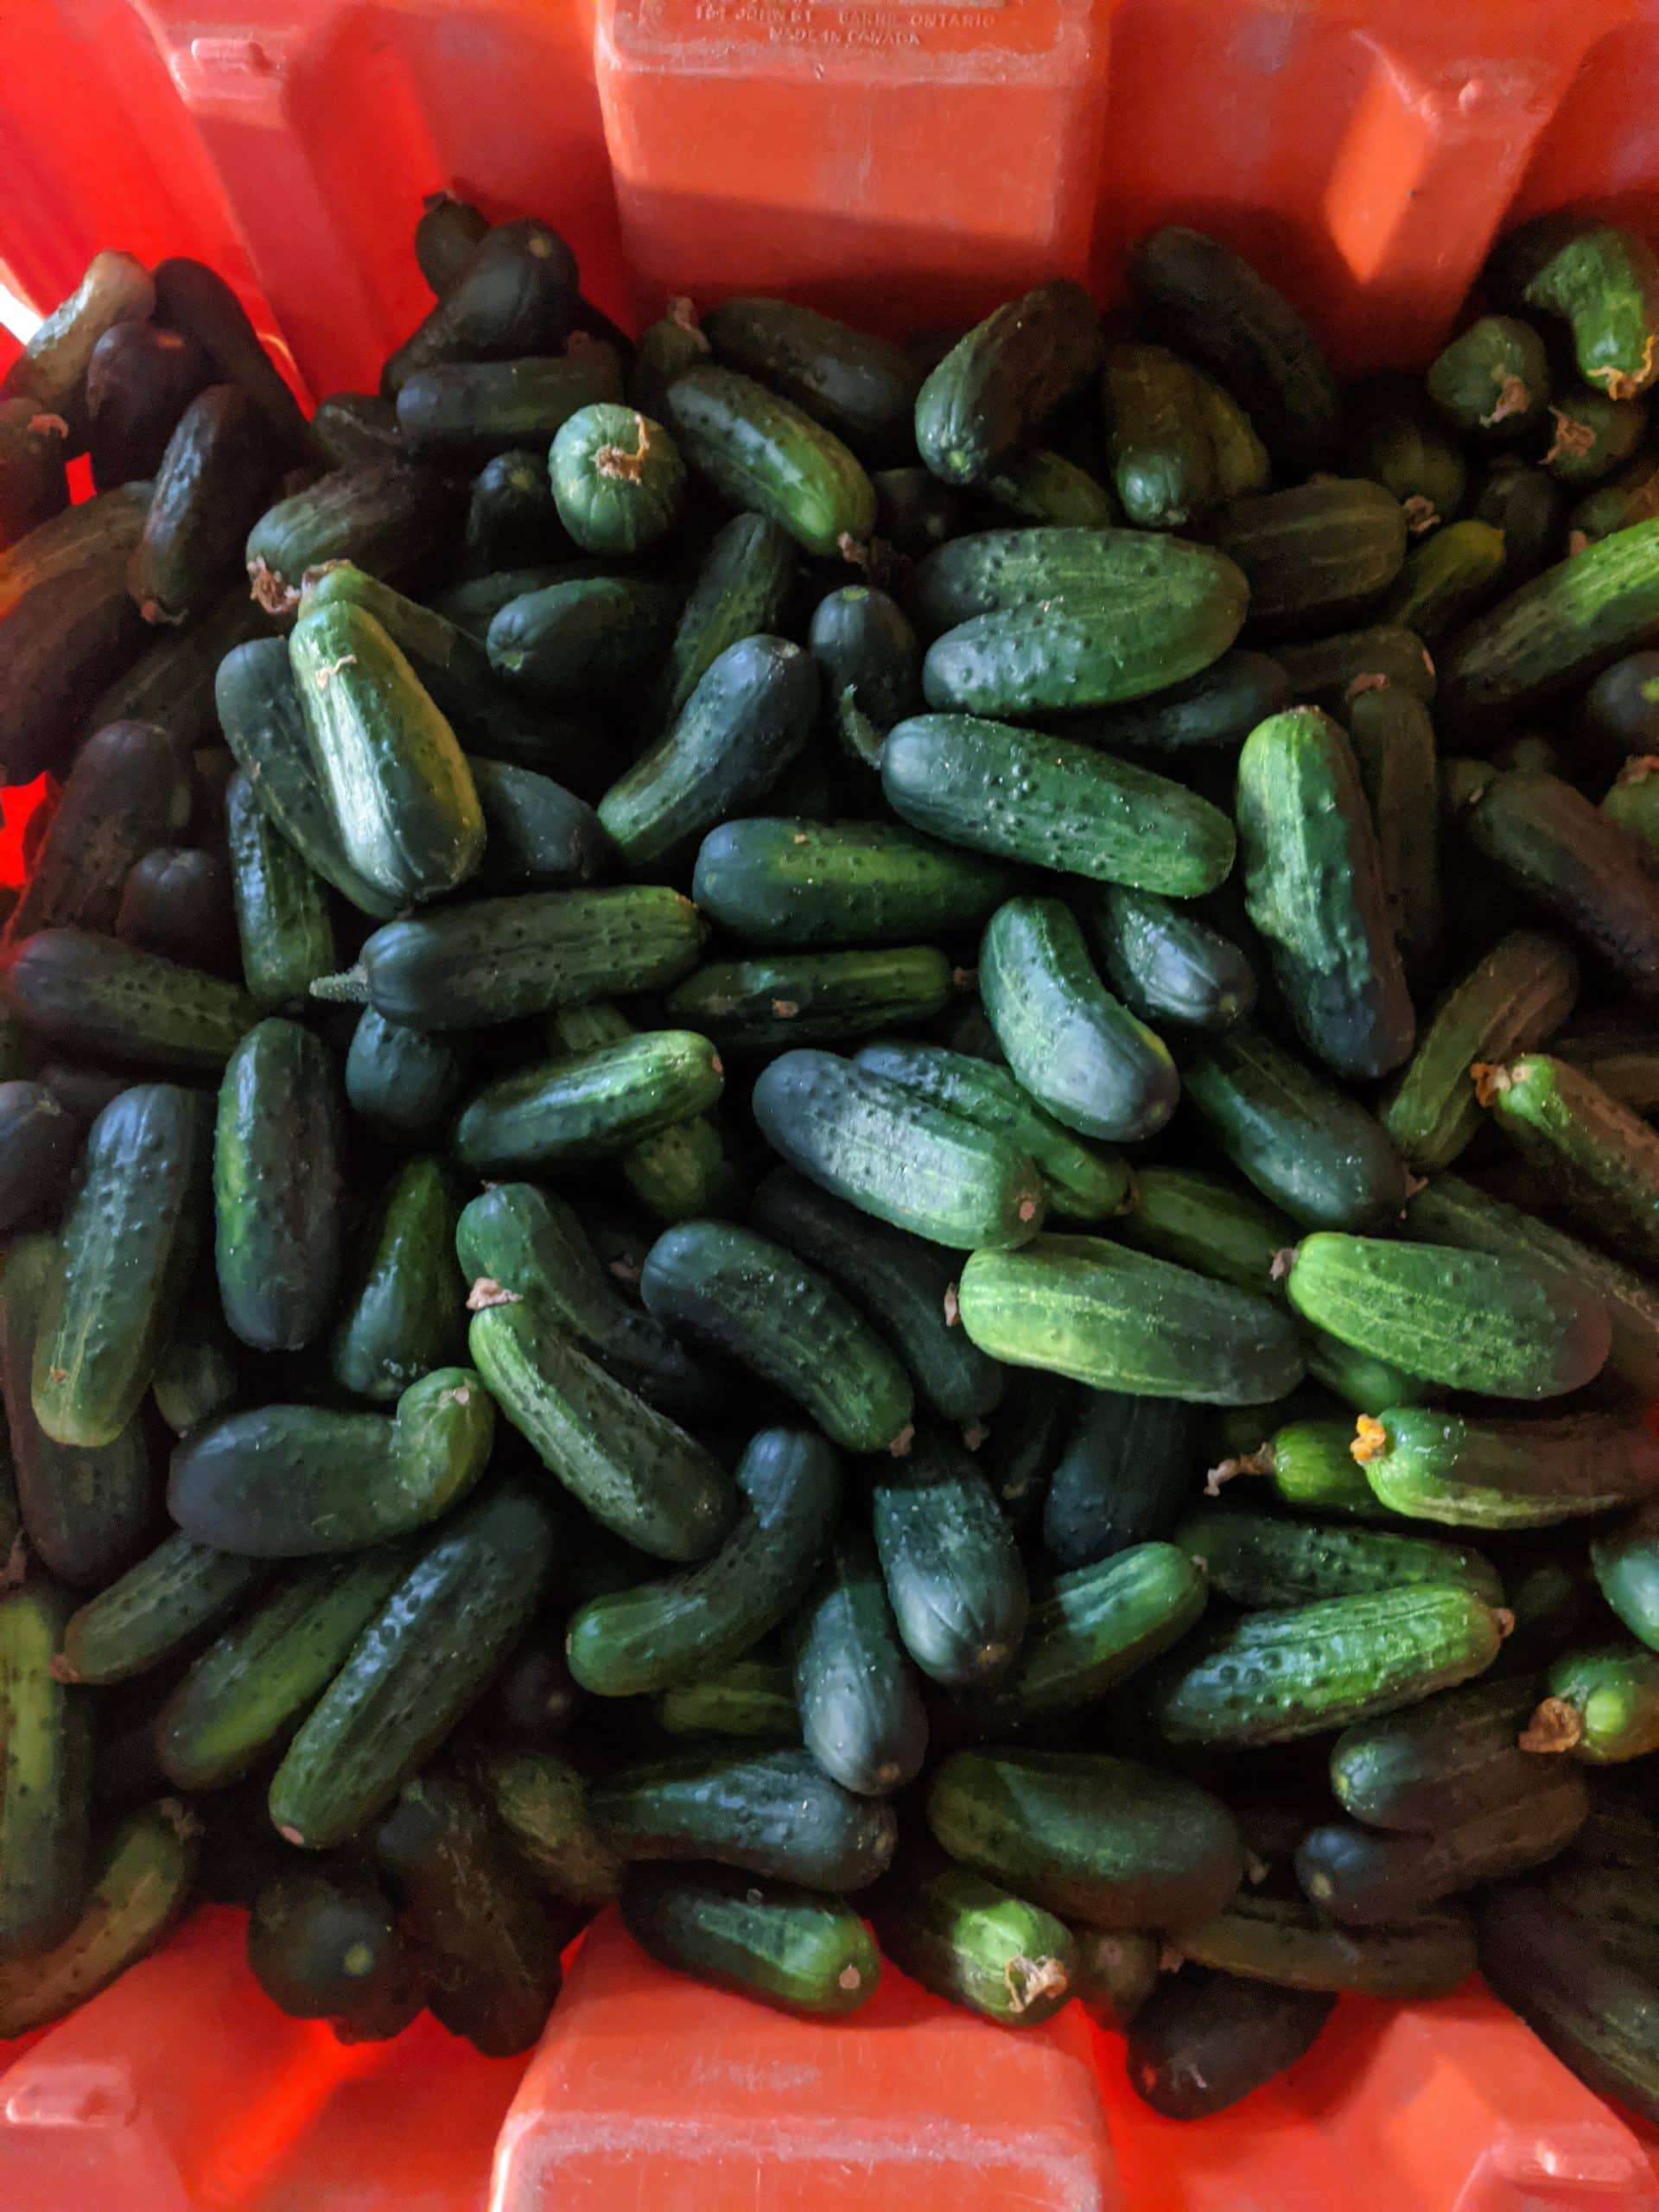 Field cucumbers